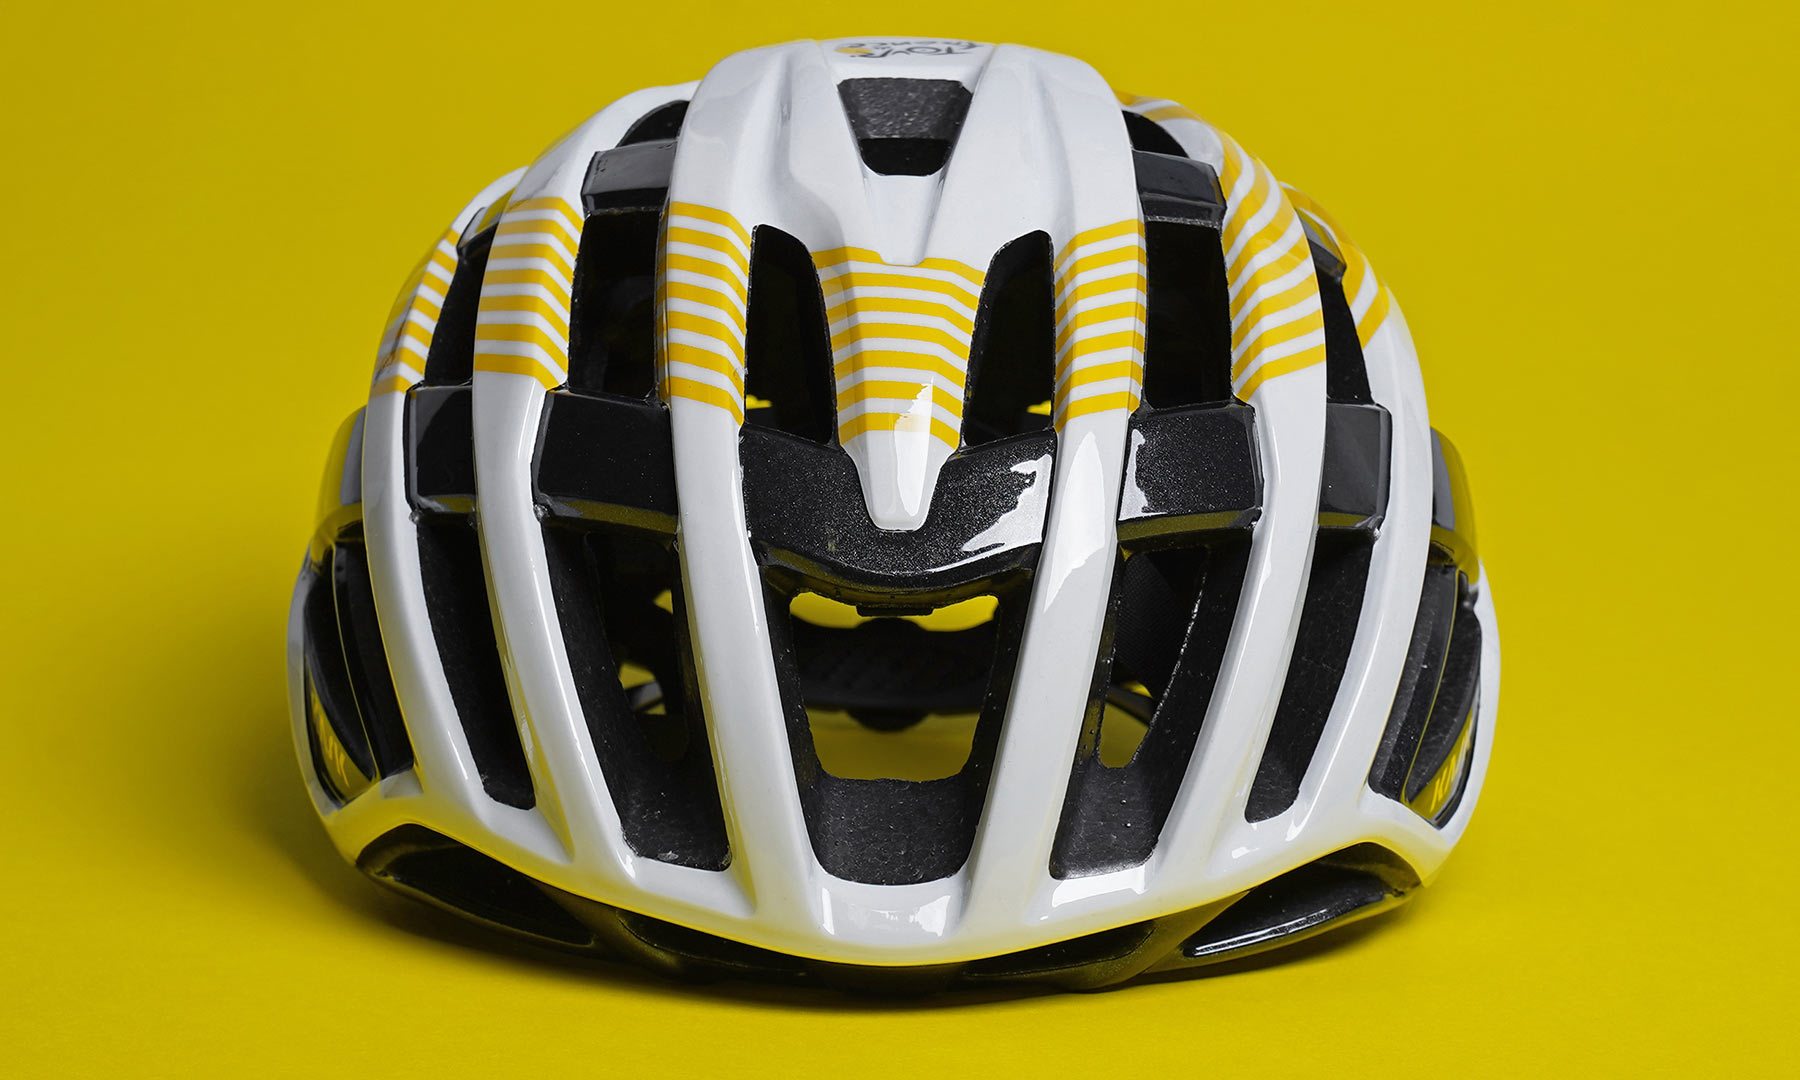 Kask Valegro Tour de France limited edition lightweight vented road bike helmet, front